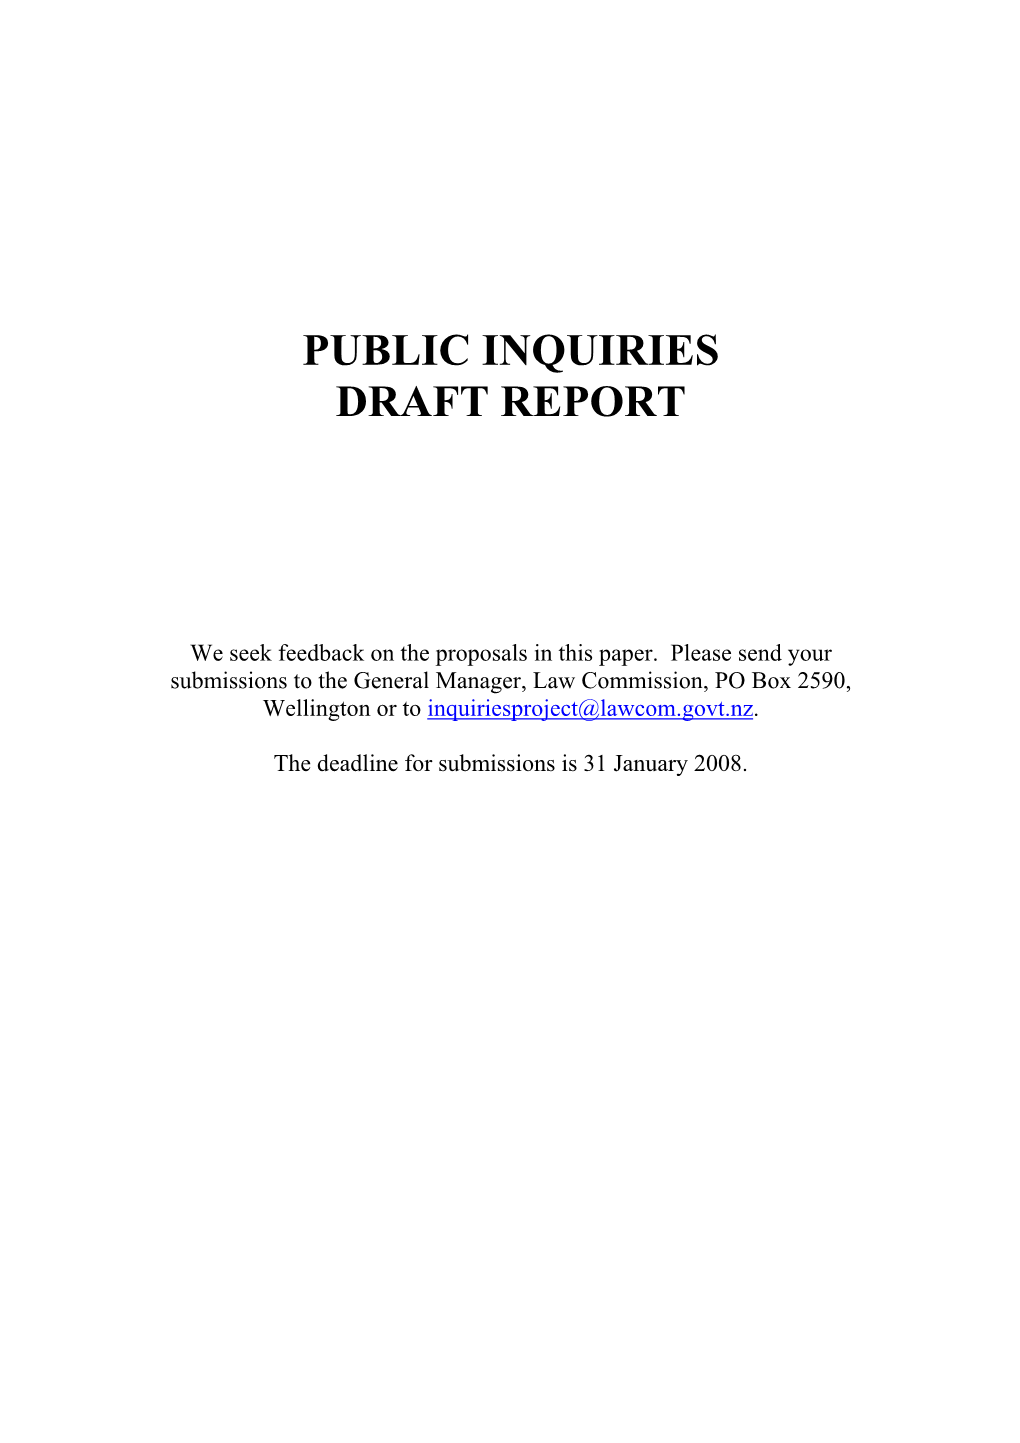 Public Inquiries Draft Report